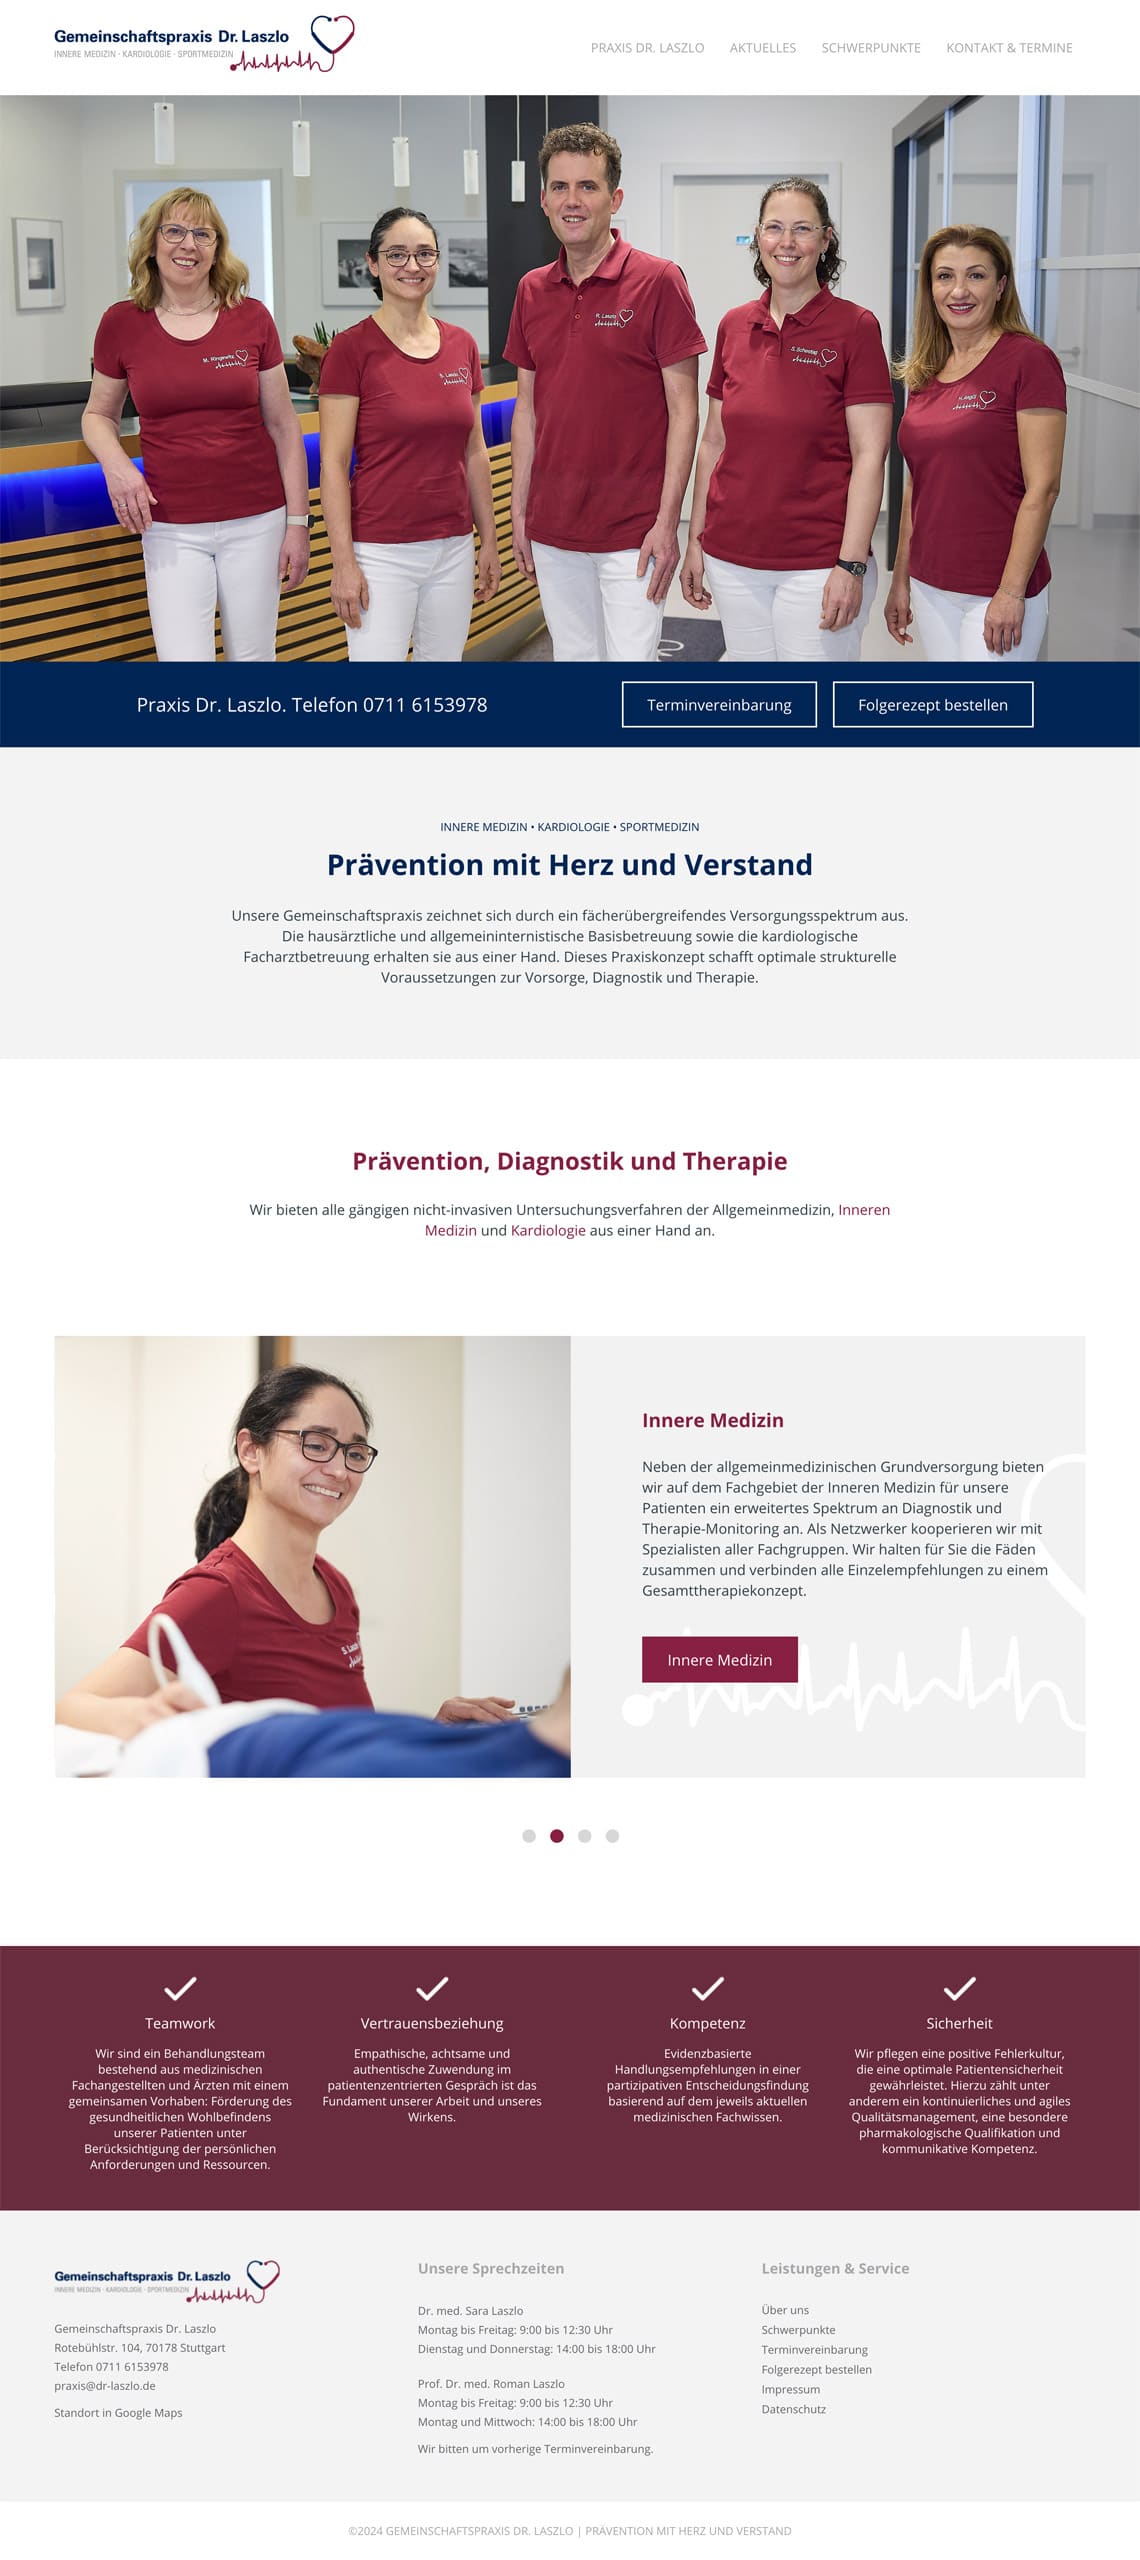 Webdesign für Praxis Dr. Laszlo: Startseite